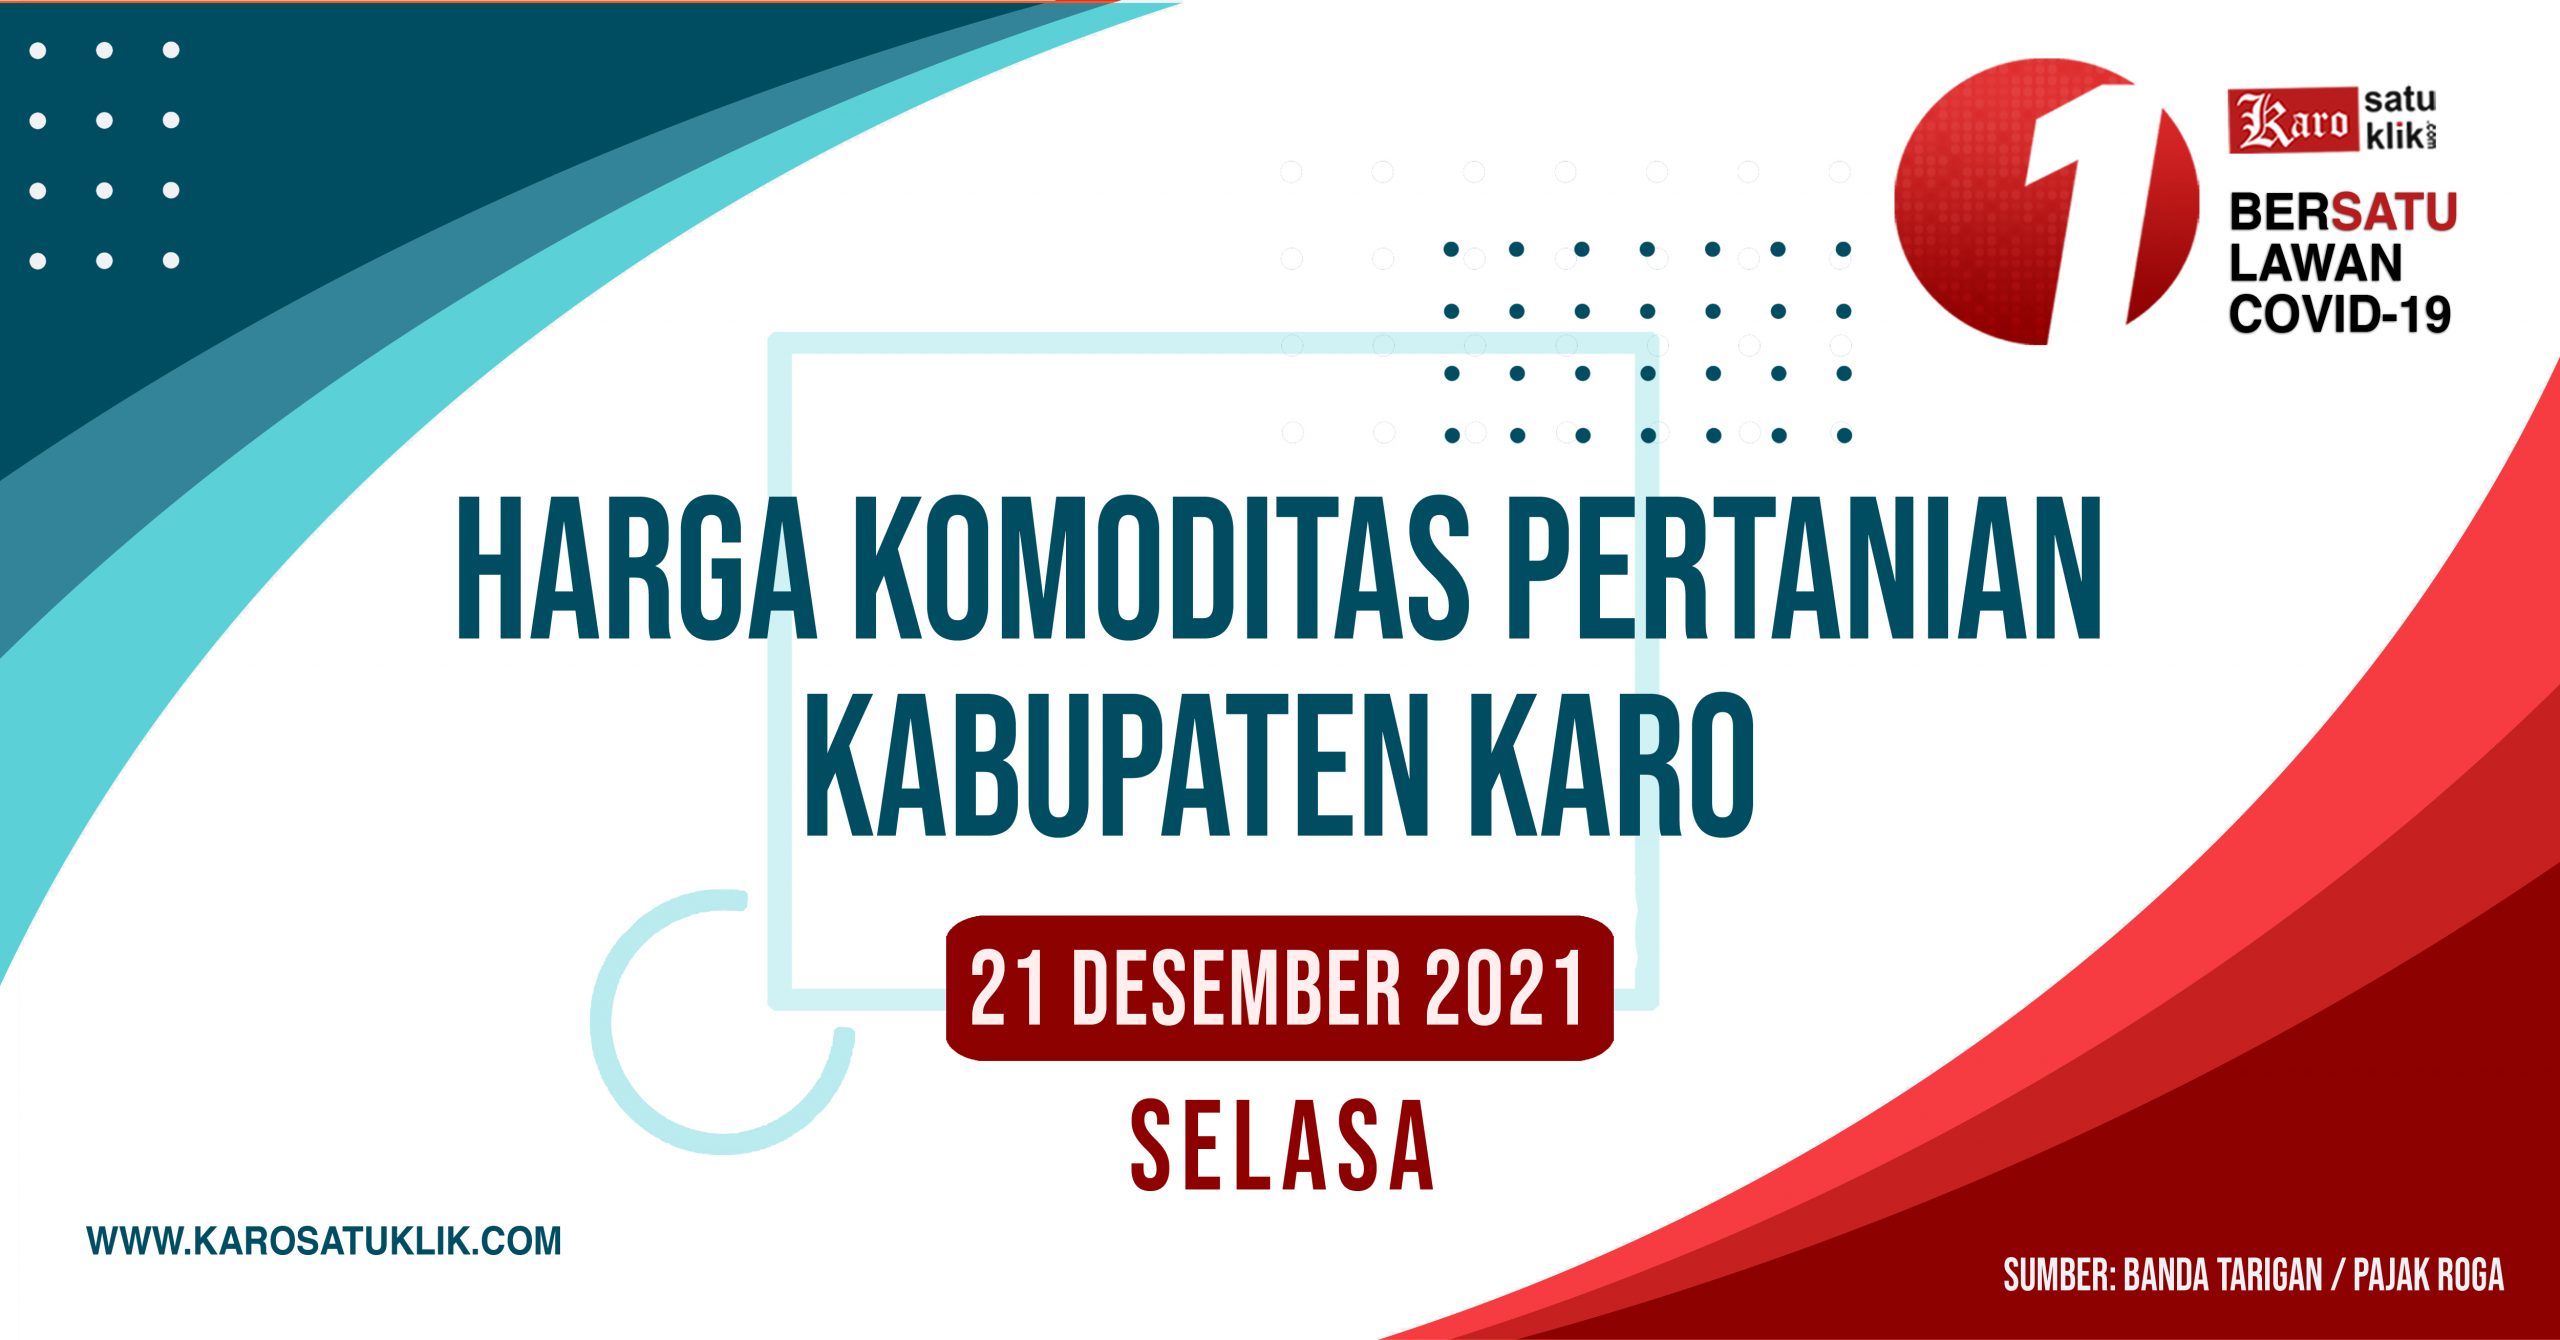 Daftar Harga Komoditas Pertanian Kabupaten Karo, 21 Desember 2021